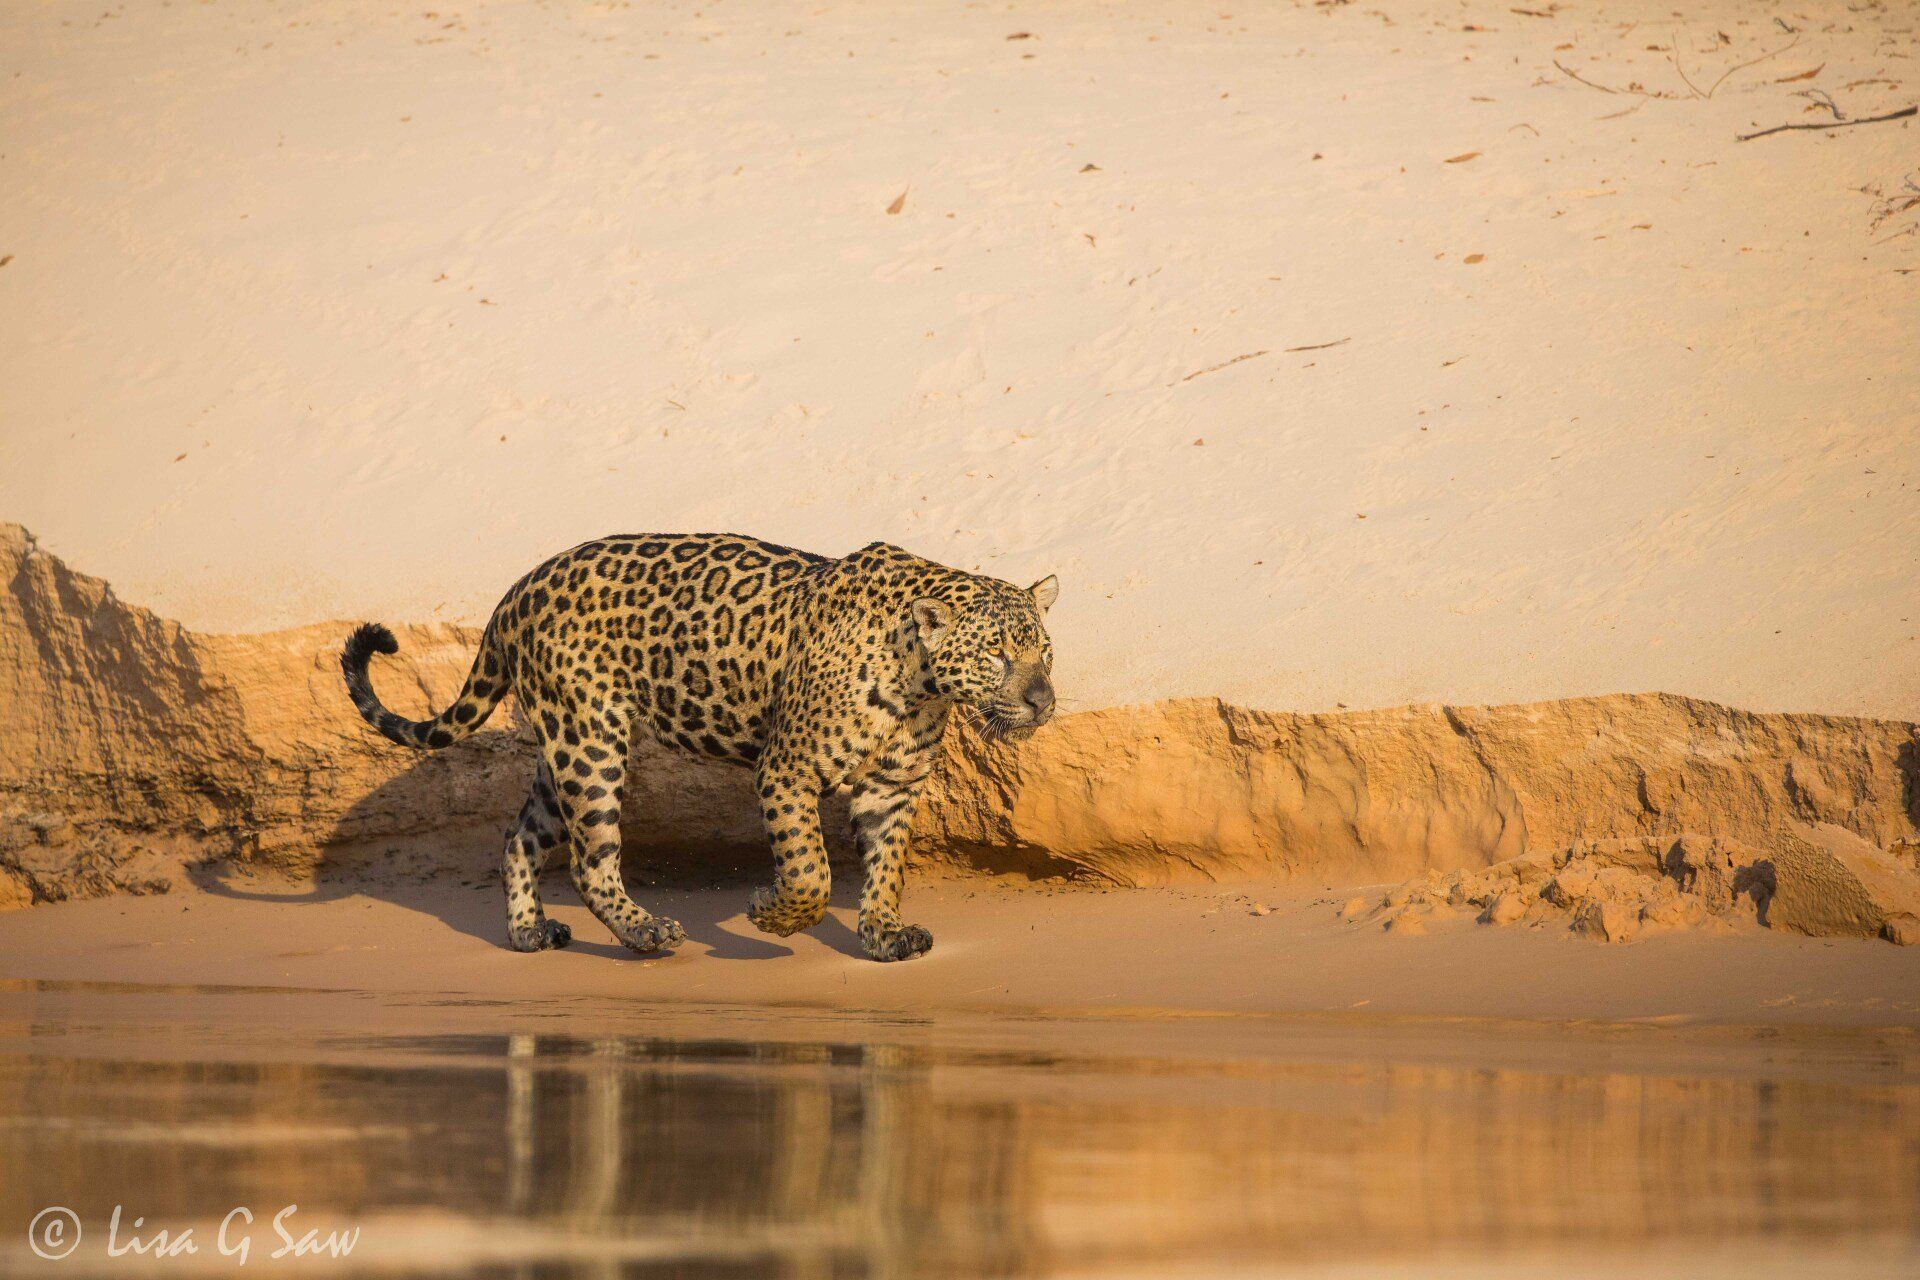 Jaguar walking along riverbank in morning light